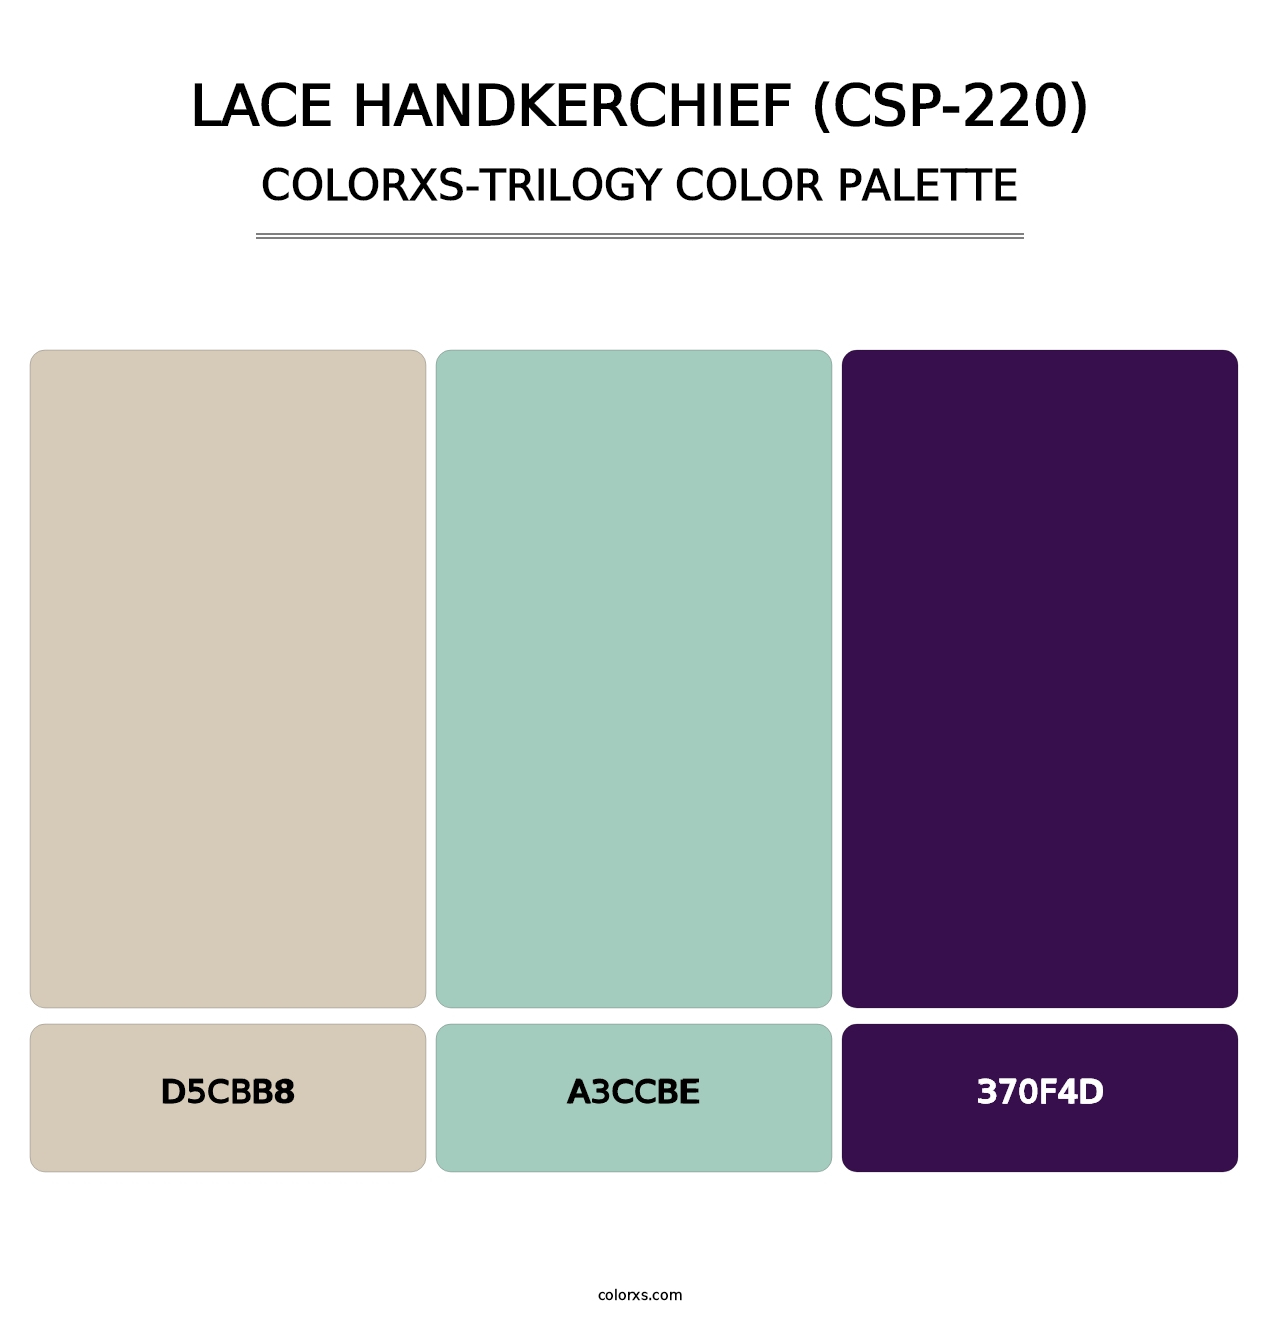 Lace Handkerchief (CSP-220) - Colorxs Trilogy Palette